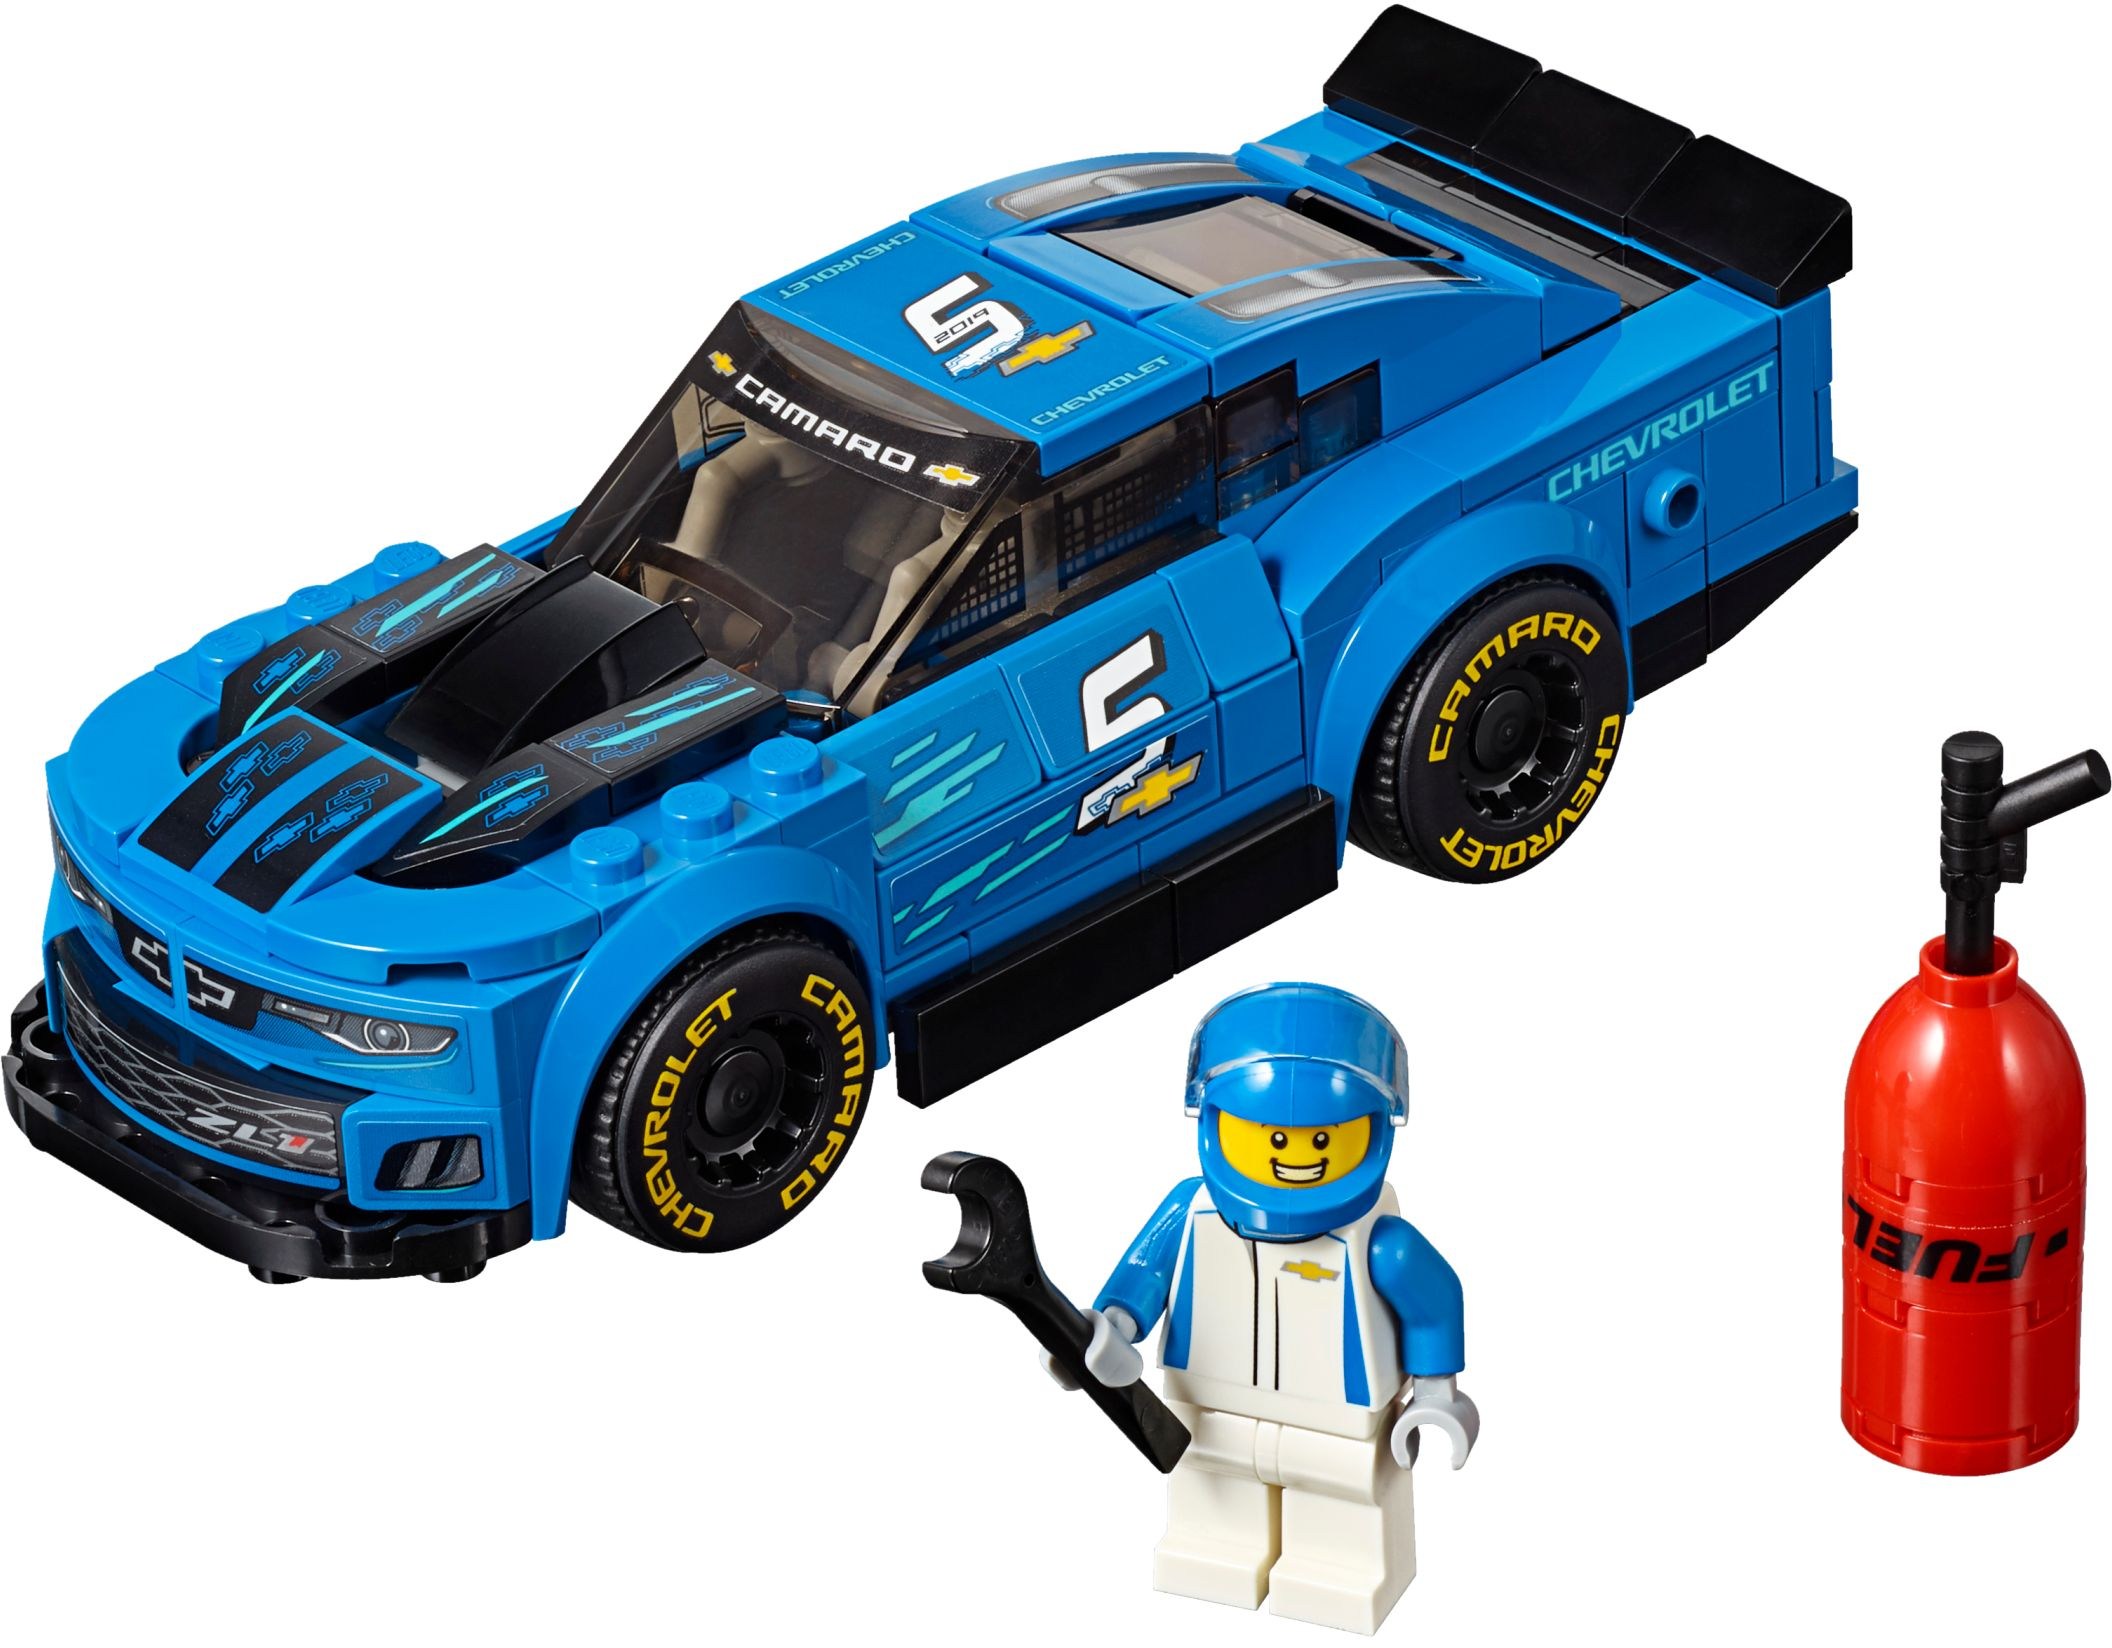 lego race car sets